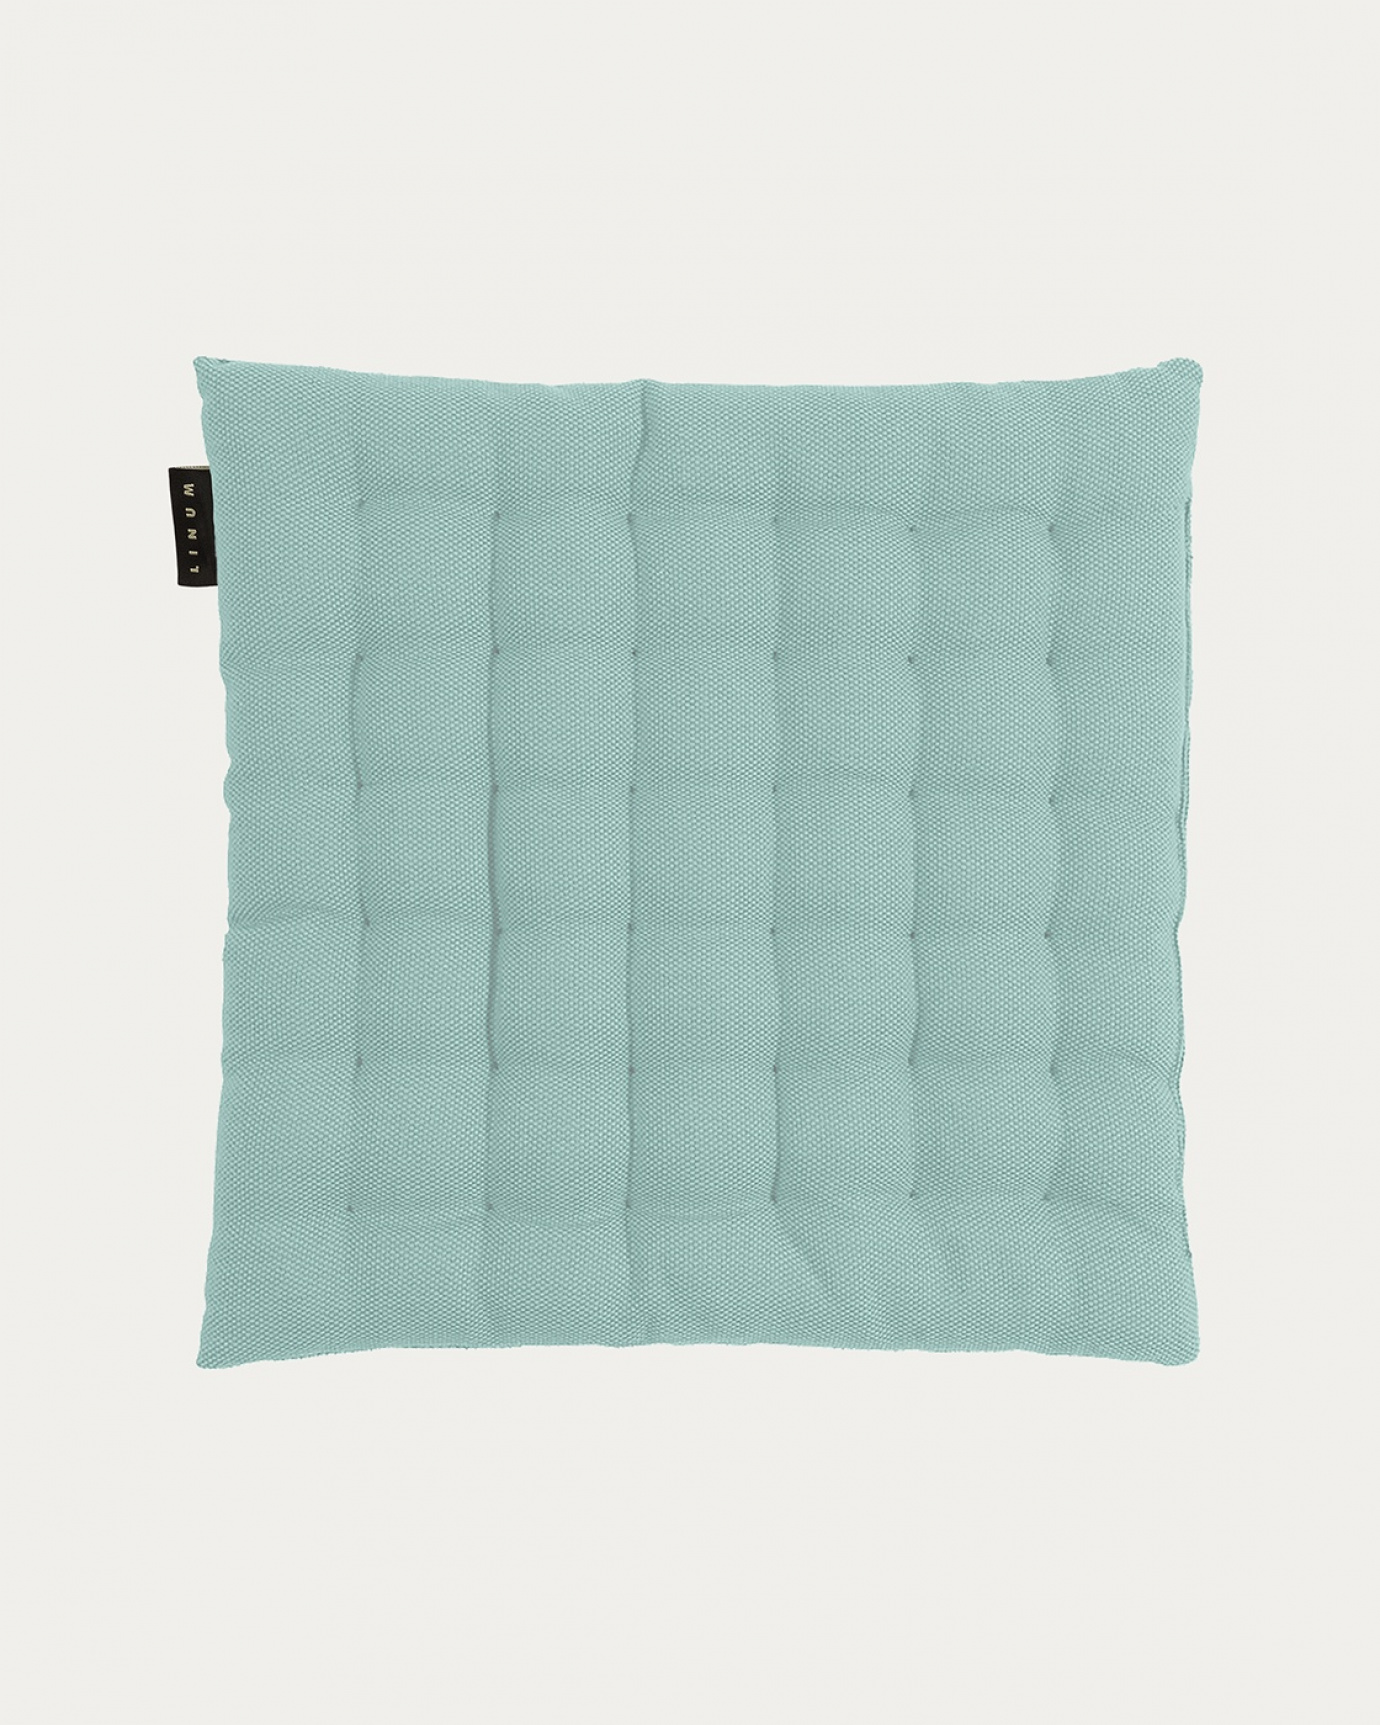 Produktbild alttürkis PEPPER Sitzkissen aus weicher Baumwolle mit Füllung aus recyceltem Polyester von LINUM DESIGN. Größe 40x40 cm.